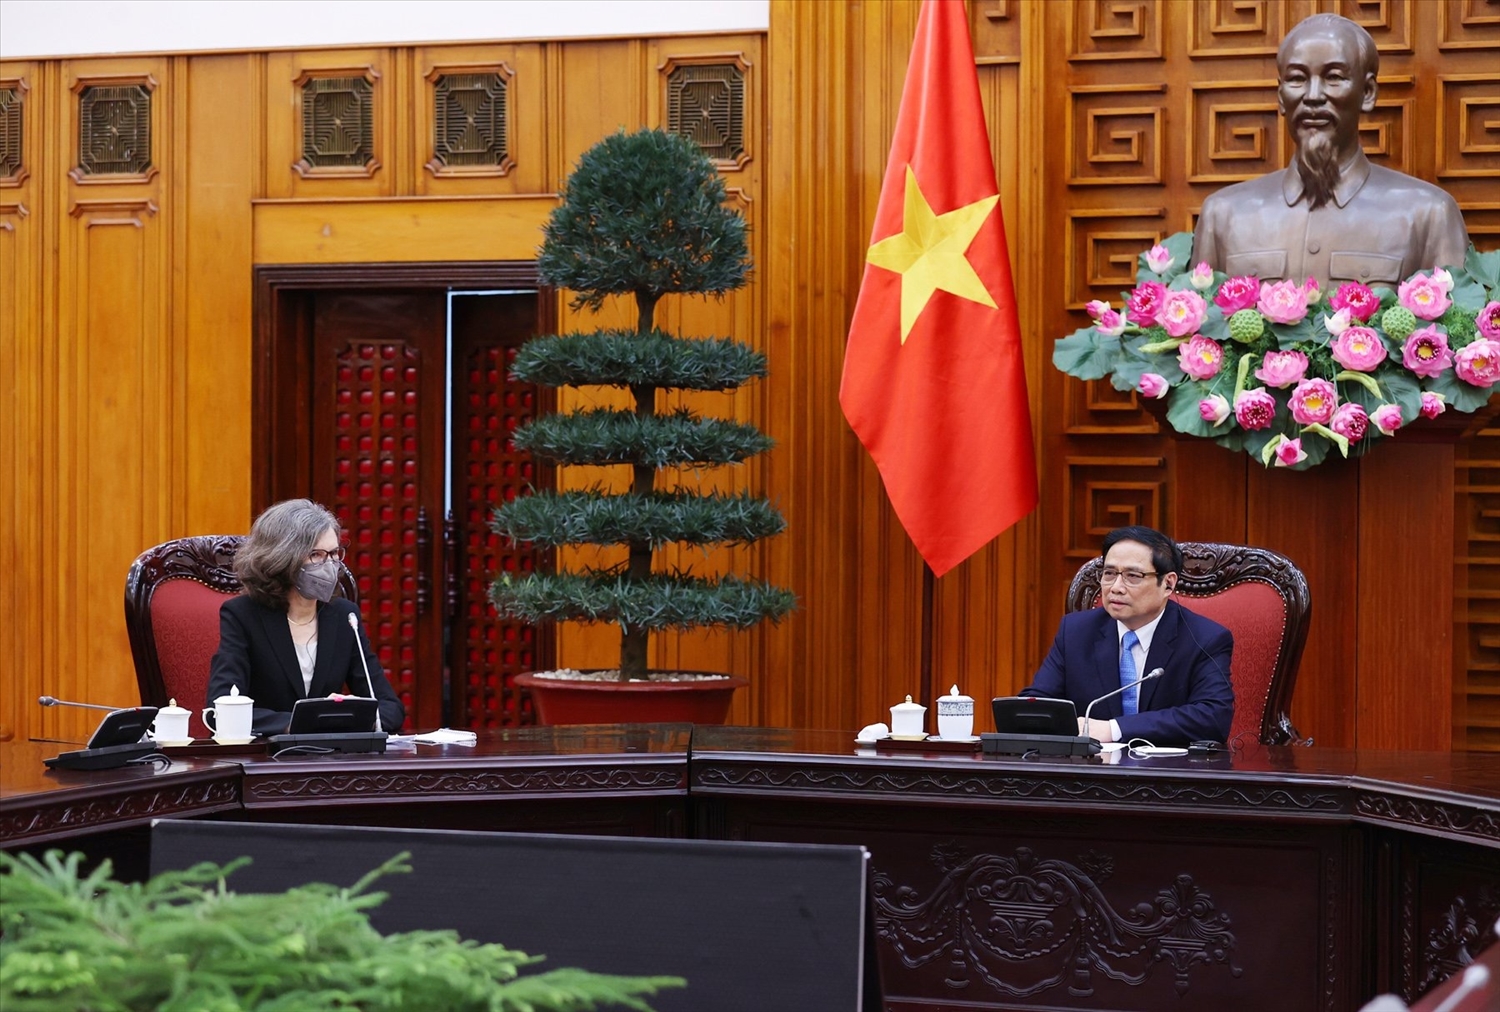 Thủ tướng trân trọng cảm ơn Chính phủ và nhân dân Canada đã hỗ trợ vaccine cho Việt Nam thông qua cơ chế COVAX - Ảnh: VGP